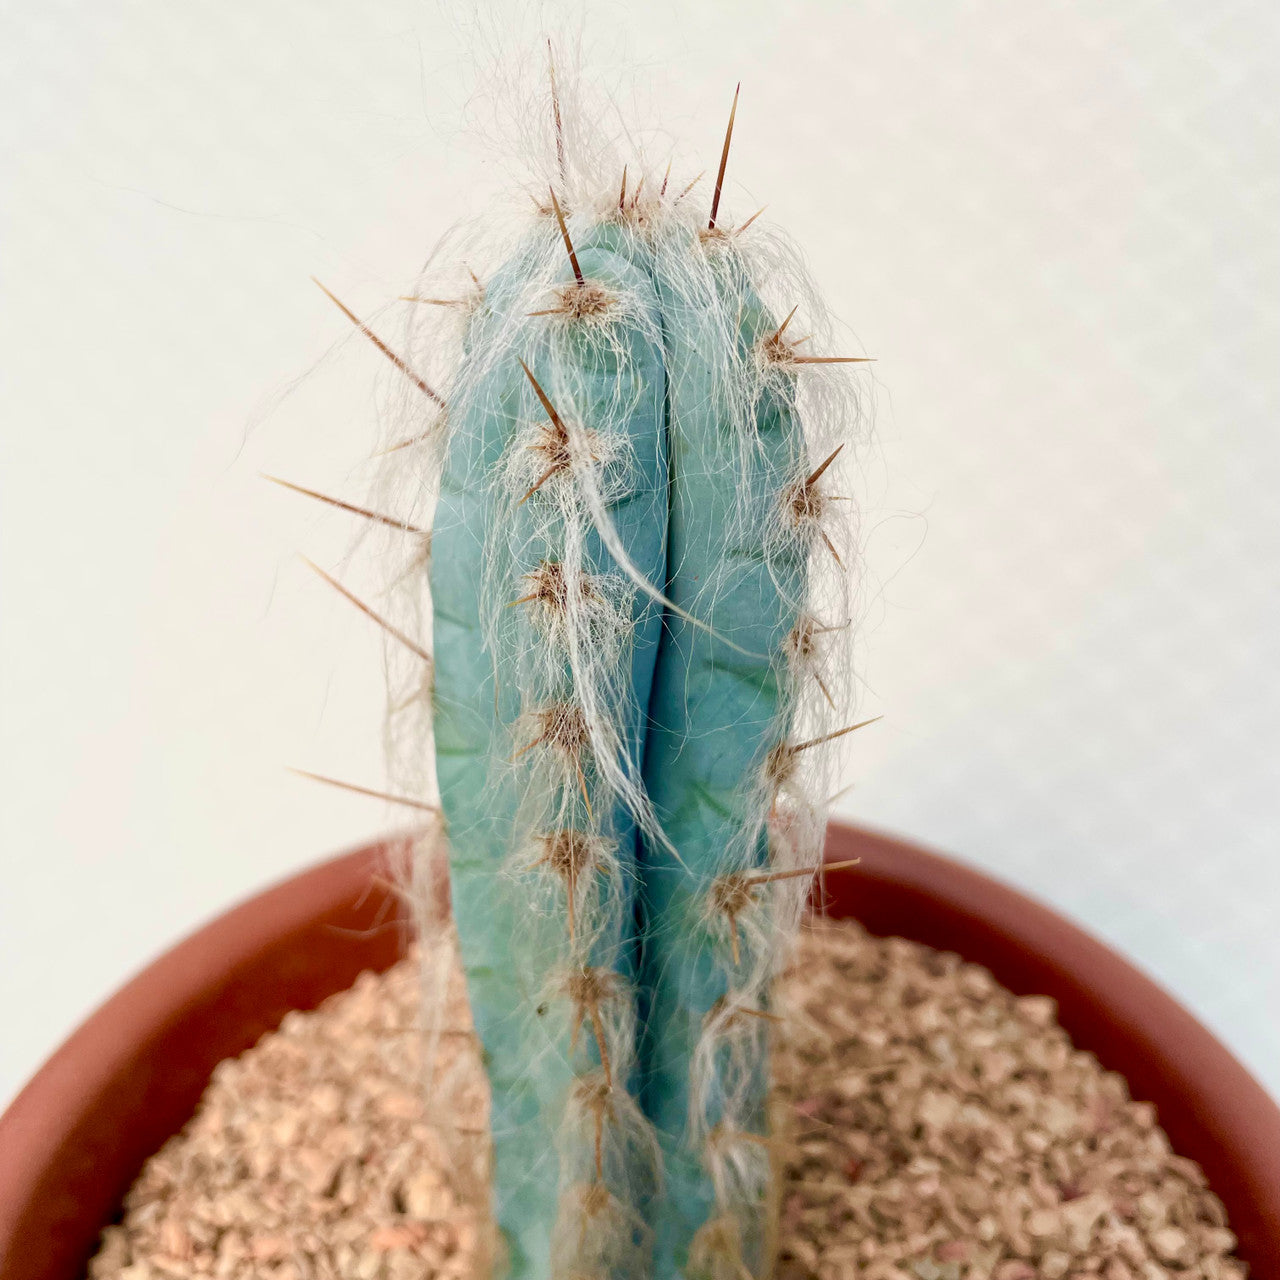 Pilosocereus Pachycladus (Blue Torch Cactus) close up